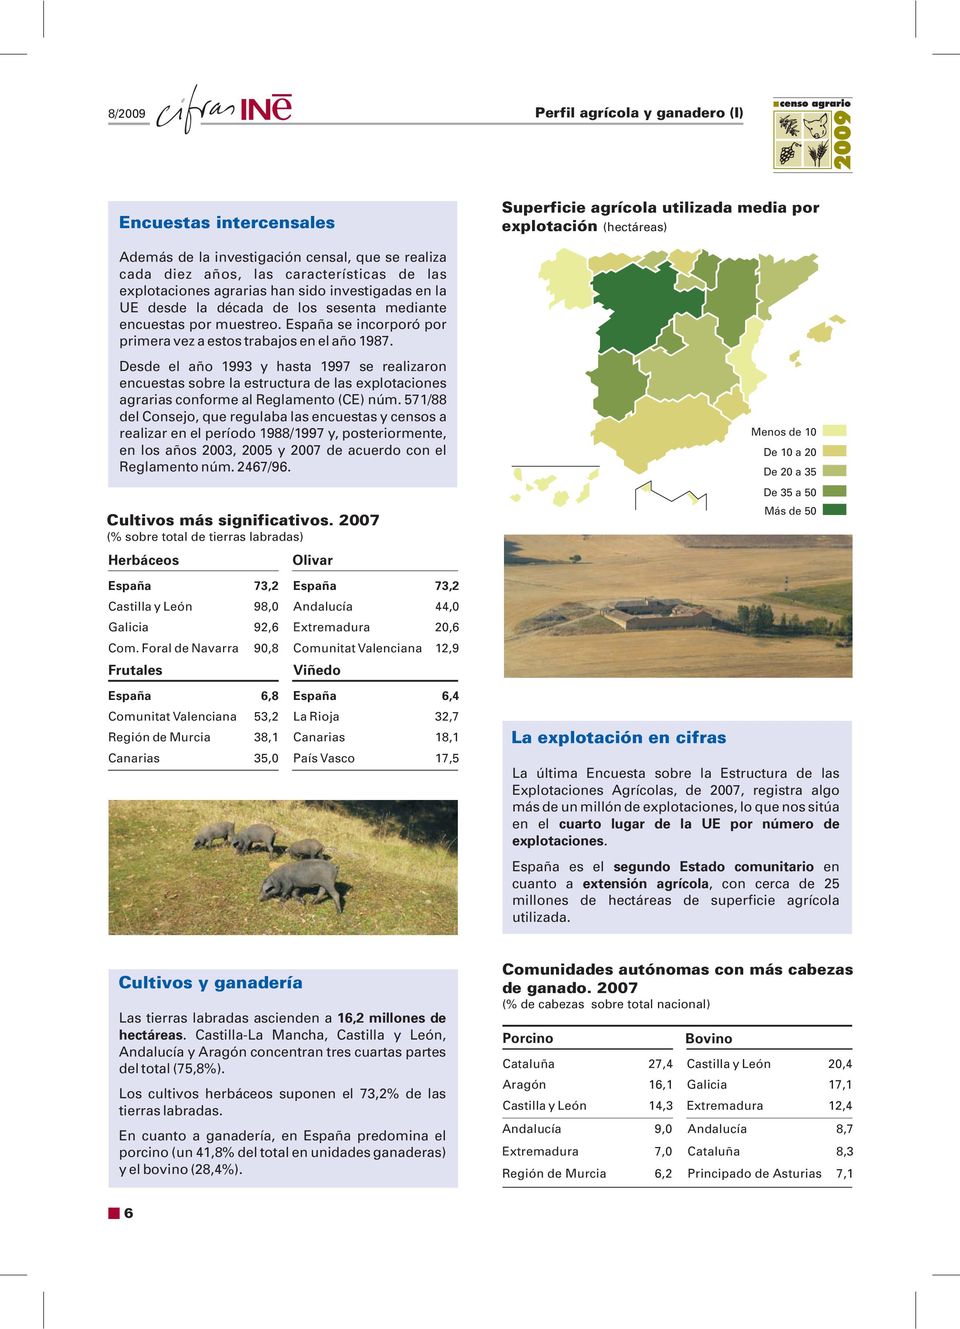 Desde el año 1993 y hasta 1997 se realizaron encuestas sobre la estructura de las explotaciones agrarias conforme al Reglamento (CE) núm.